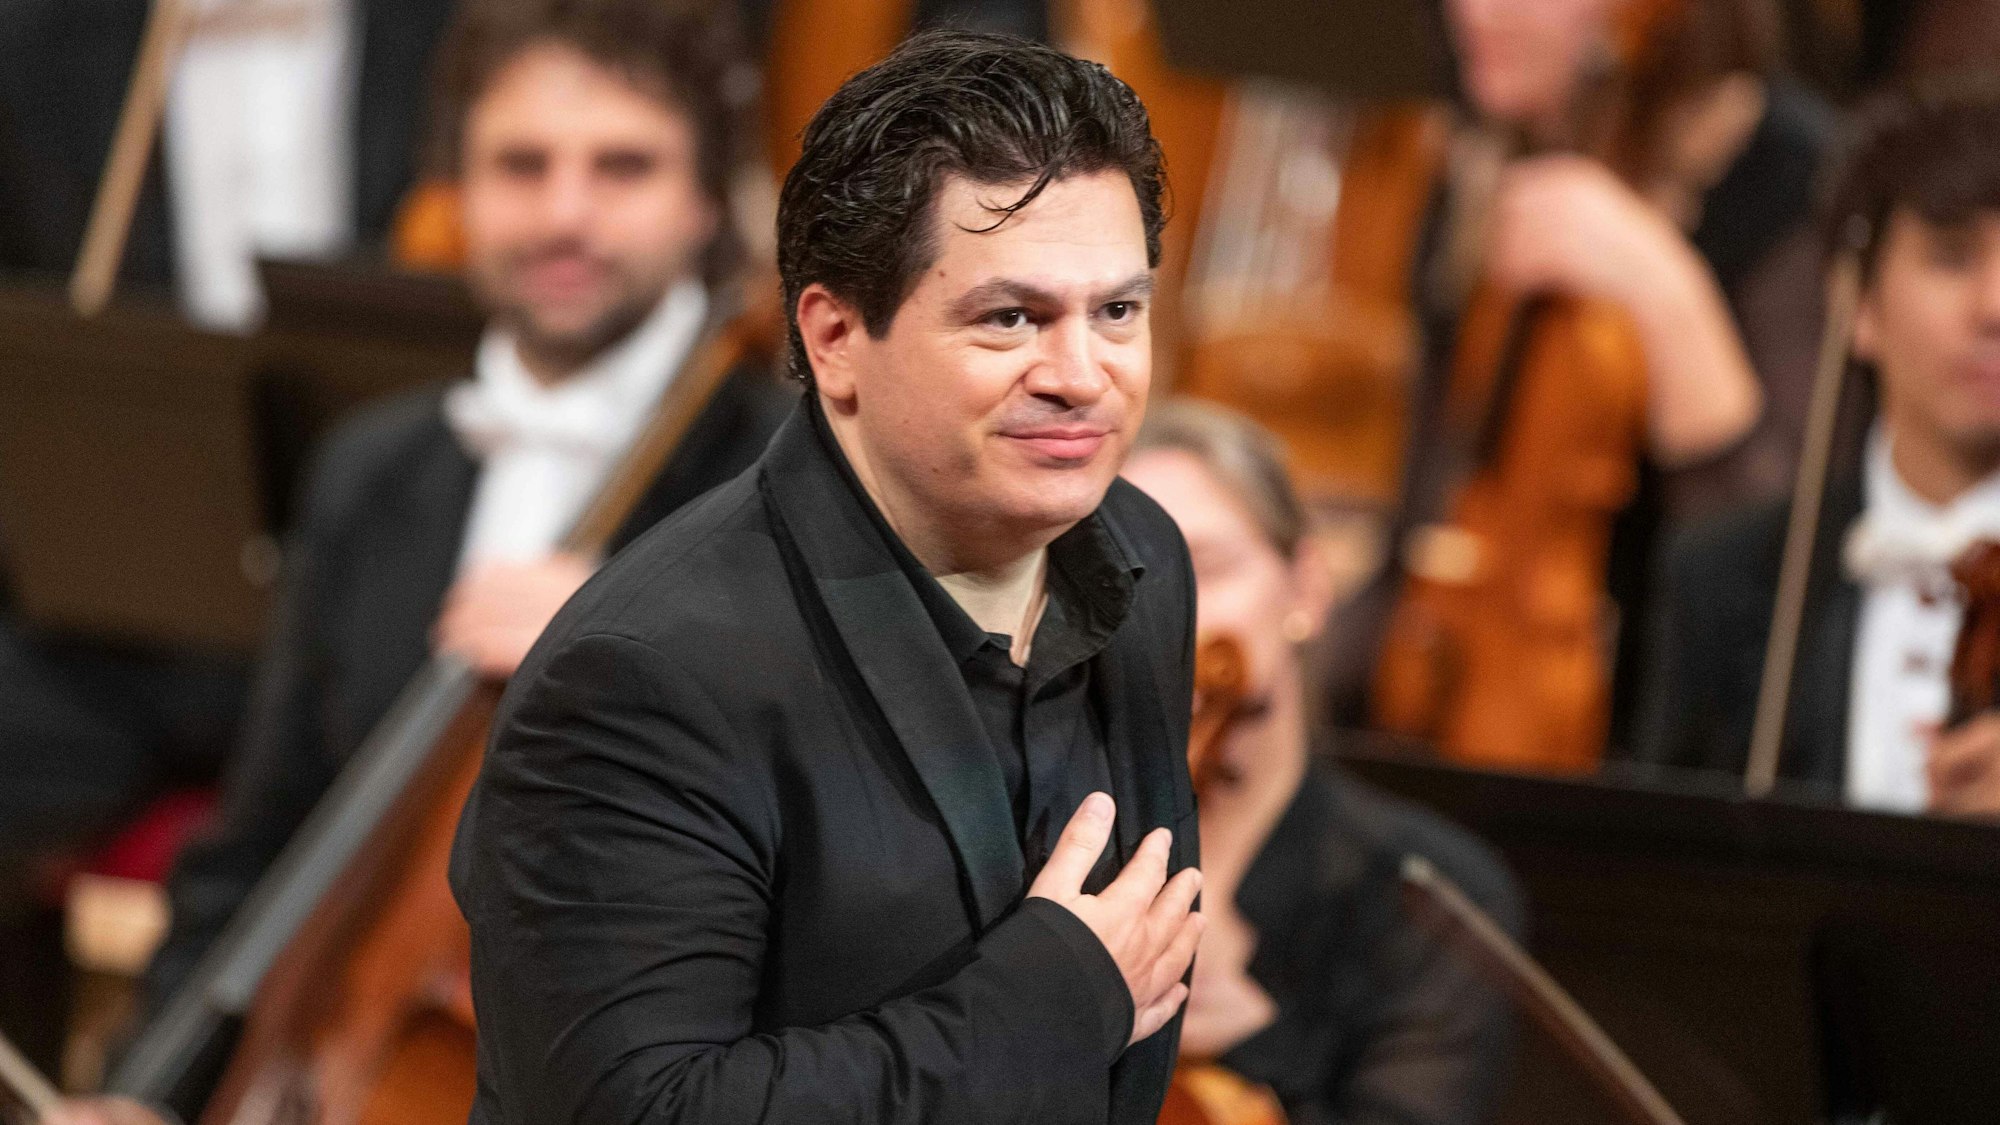 Cristian Măcelaru, Chefdirigent des WDR-Sinfonieorchesters, verbeugt sich beim Schlussapplaus eines Konzerts.